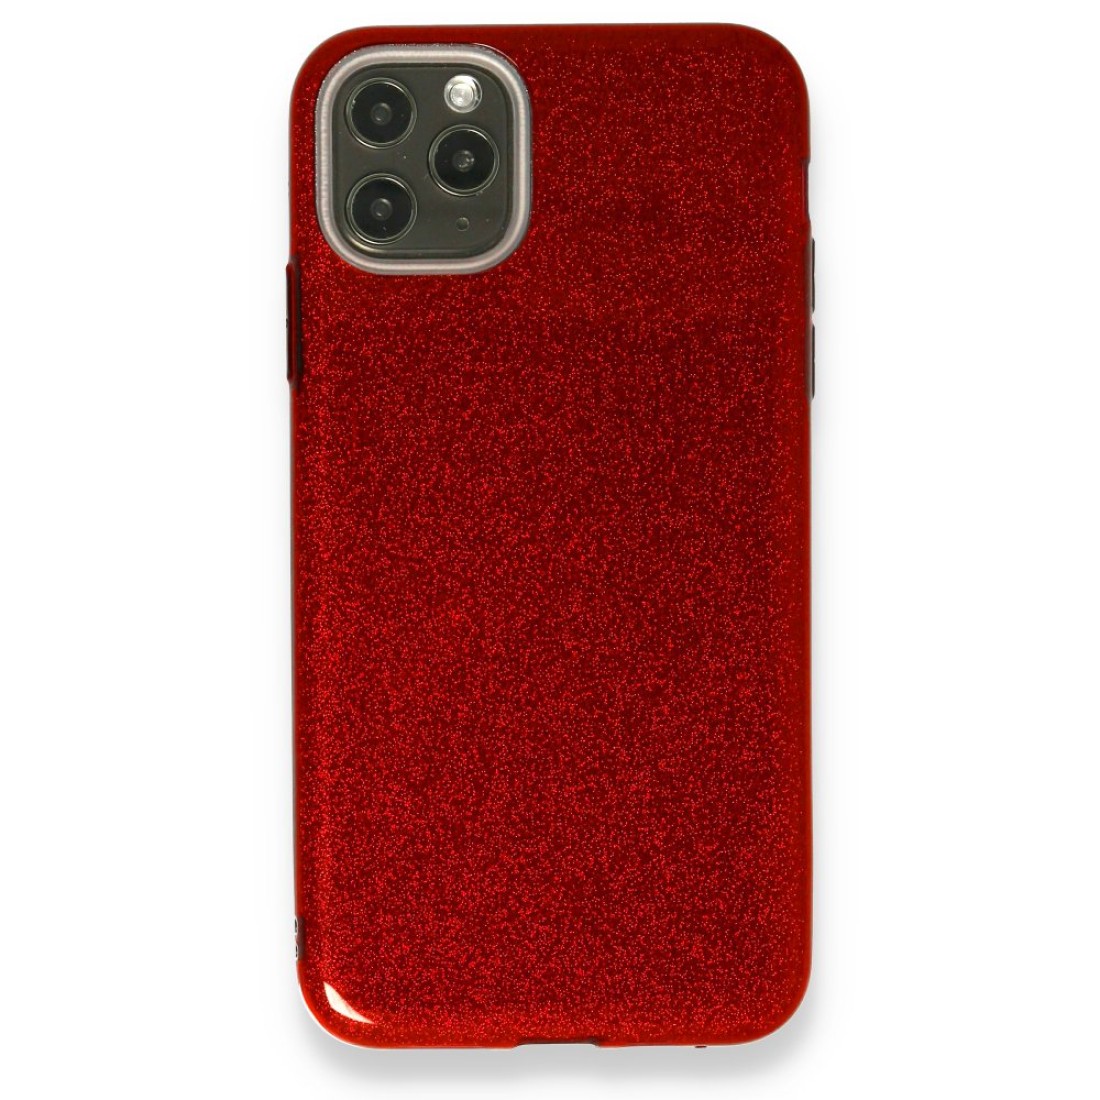 Apple iPhone 11 Pro Kılıf Simli Katmanlı Silikon - Kırmızı